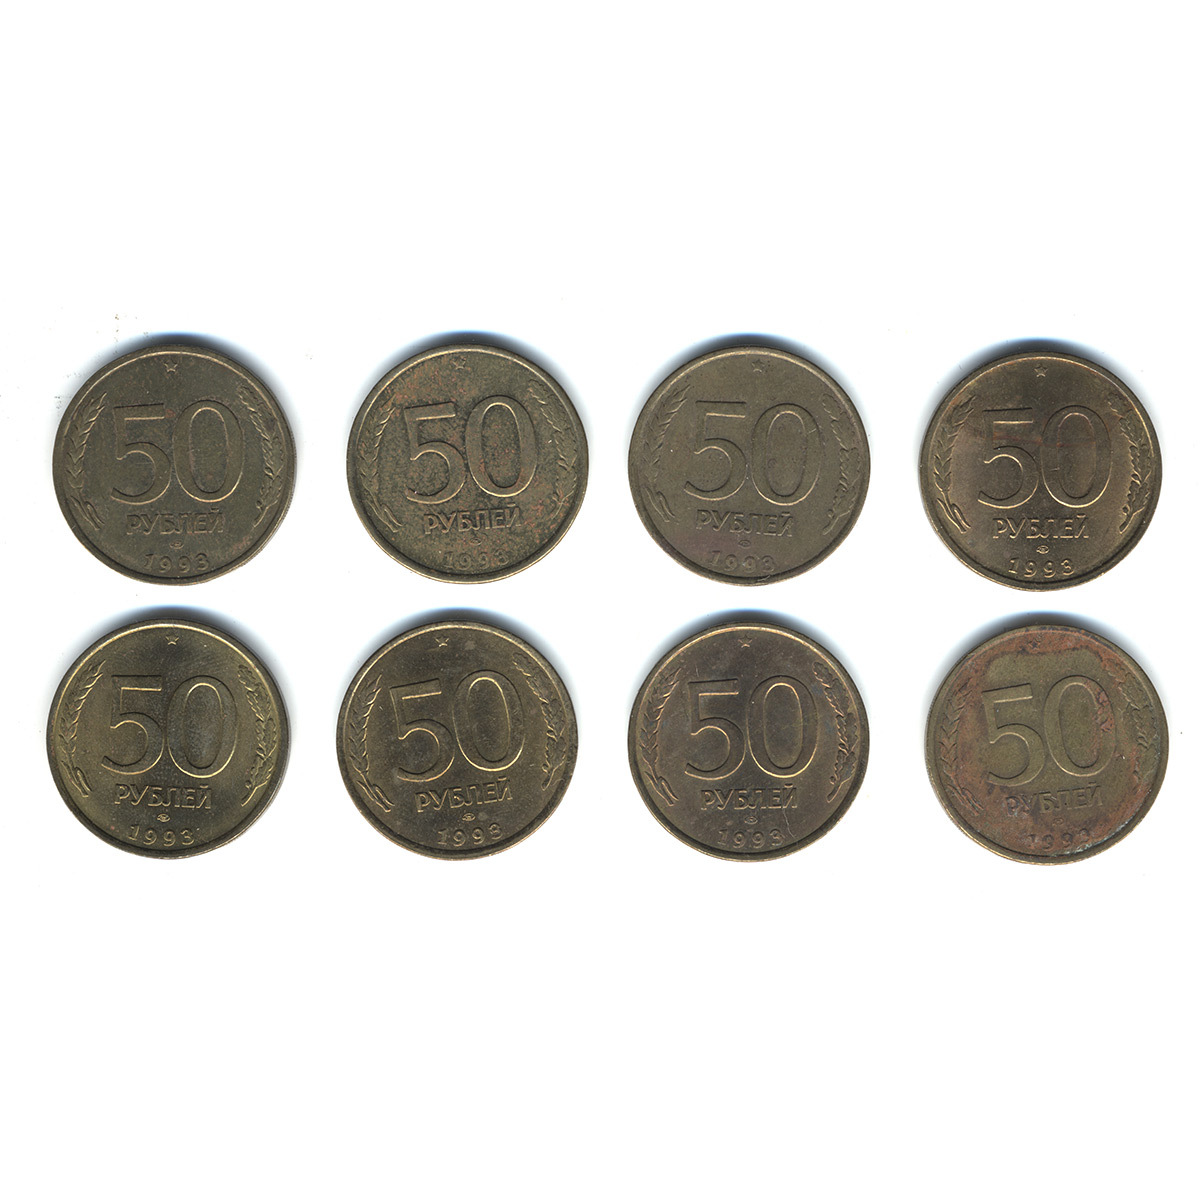 Восьмерка монет. Дорогие монеты 50 рублей 1993. 8 Монет. 8ми угольная монета. 8 монет в операции